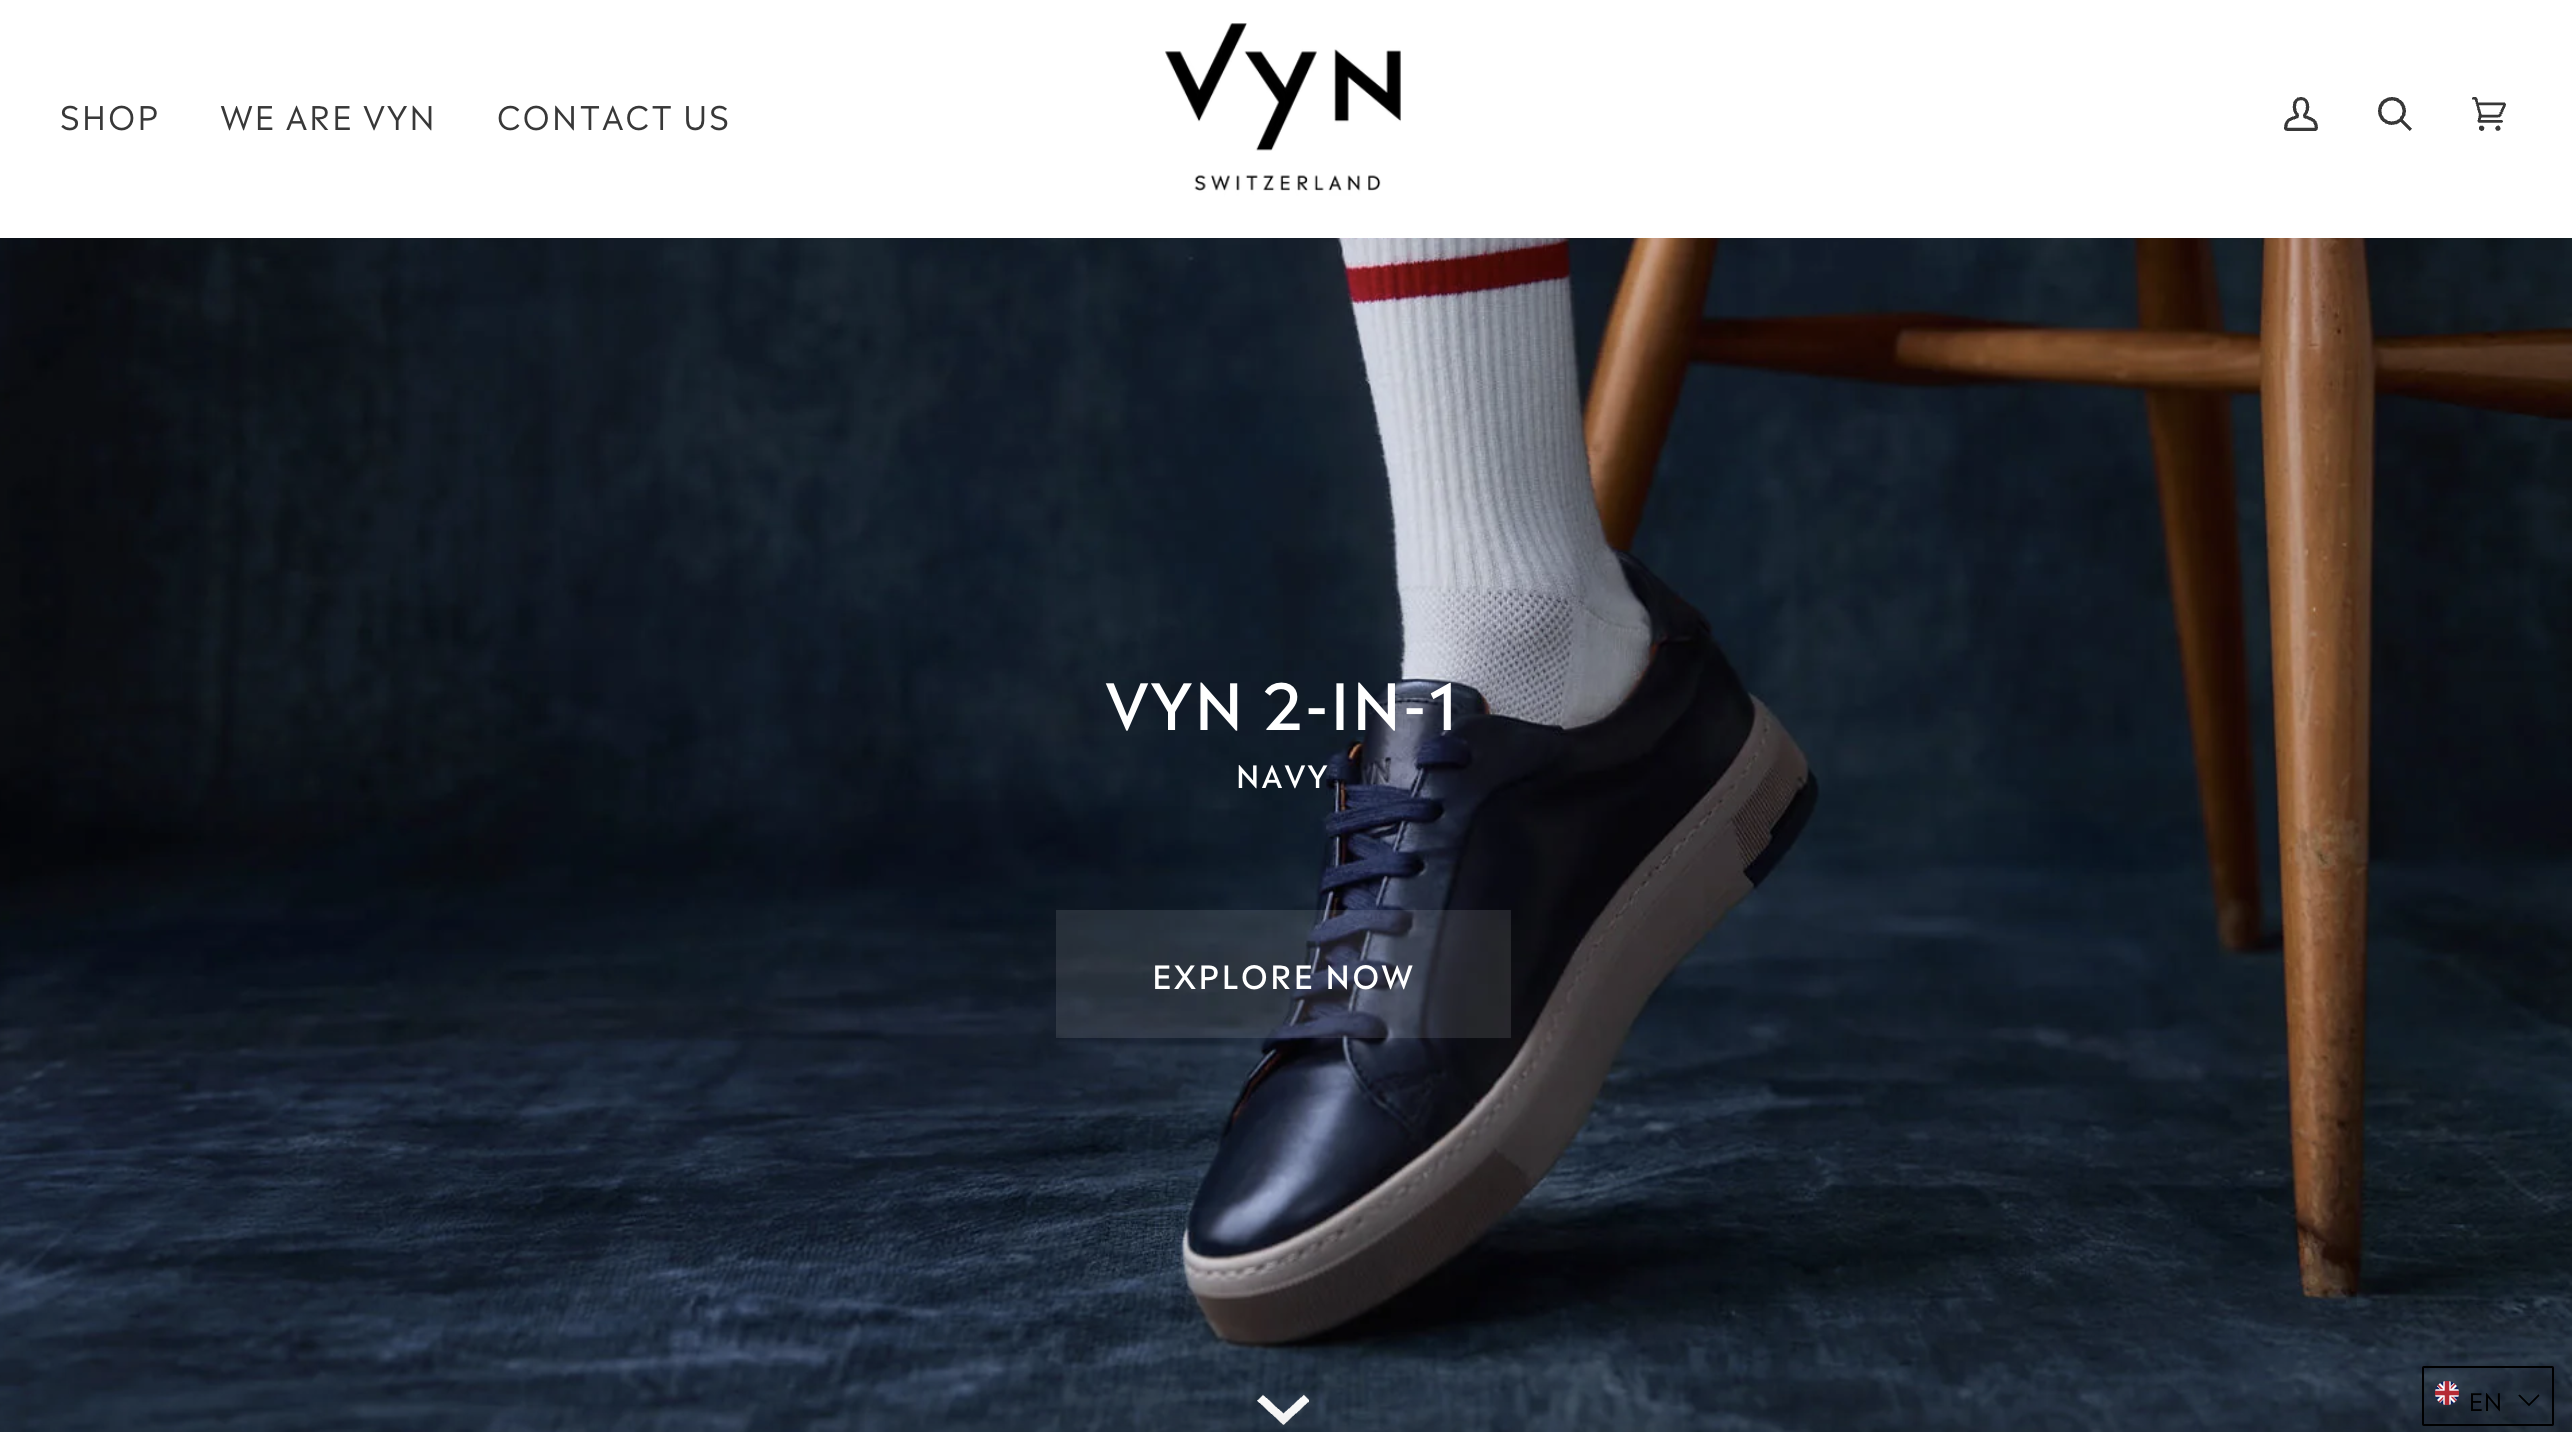 “全球首款可更换零部件的运动鞋”，瑞士可持续奢侈品牌 VYN 完成50万英镑融资